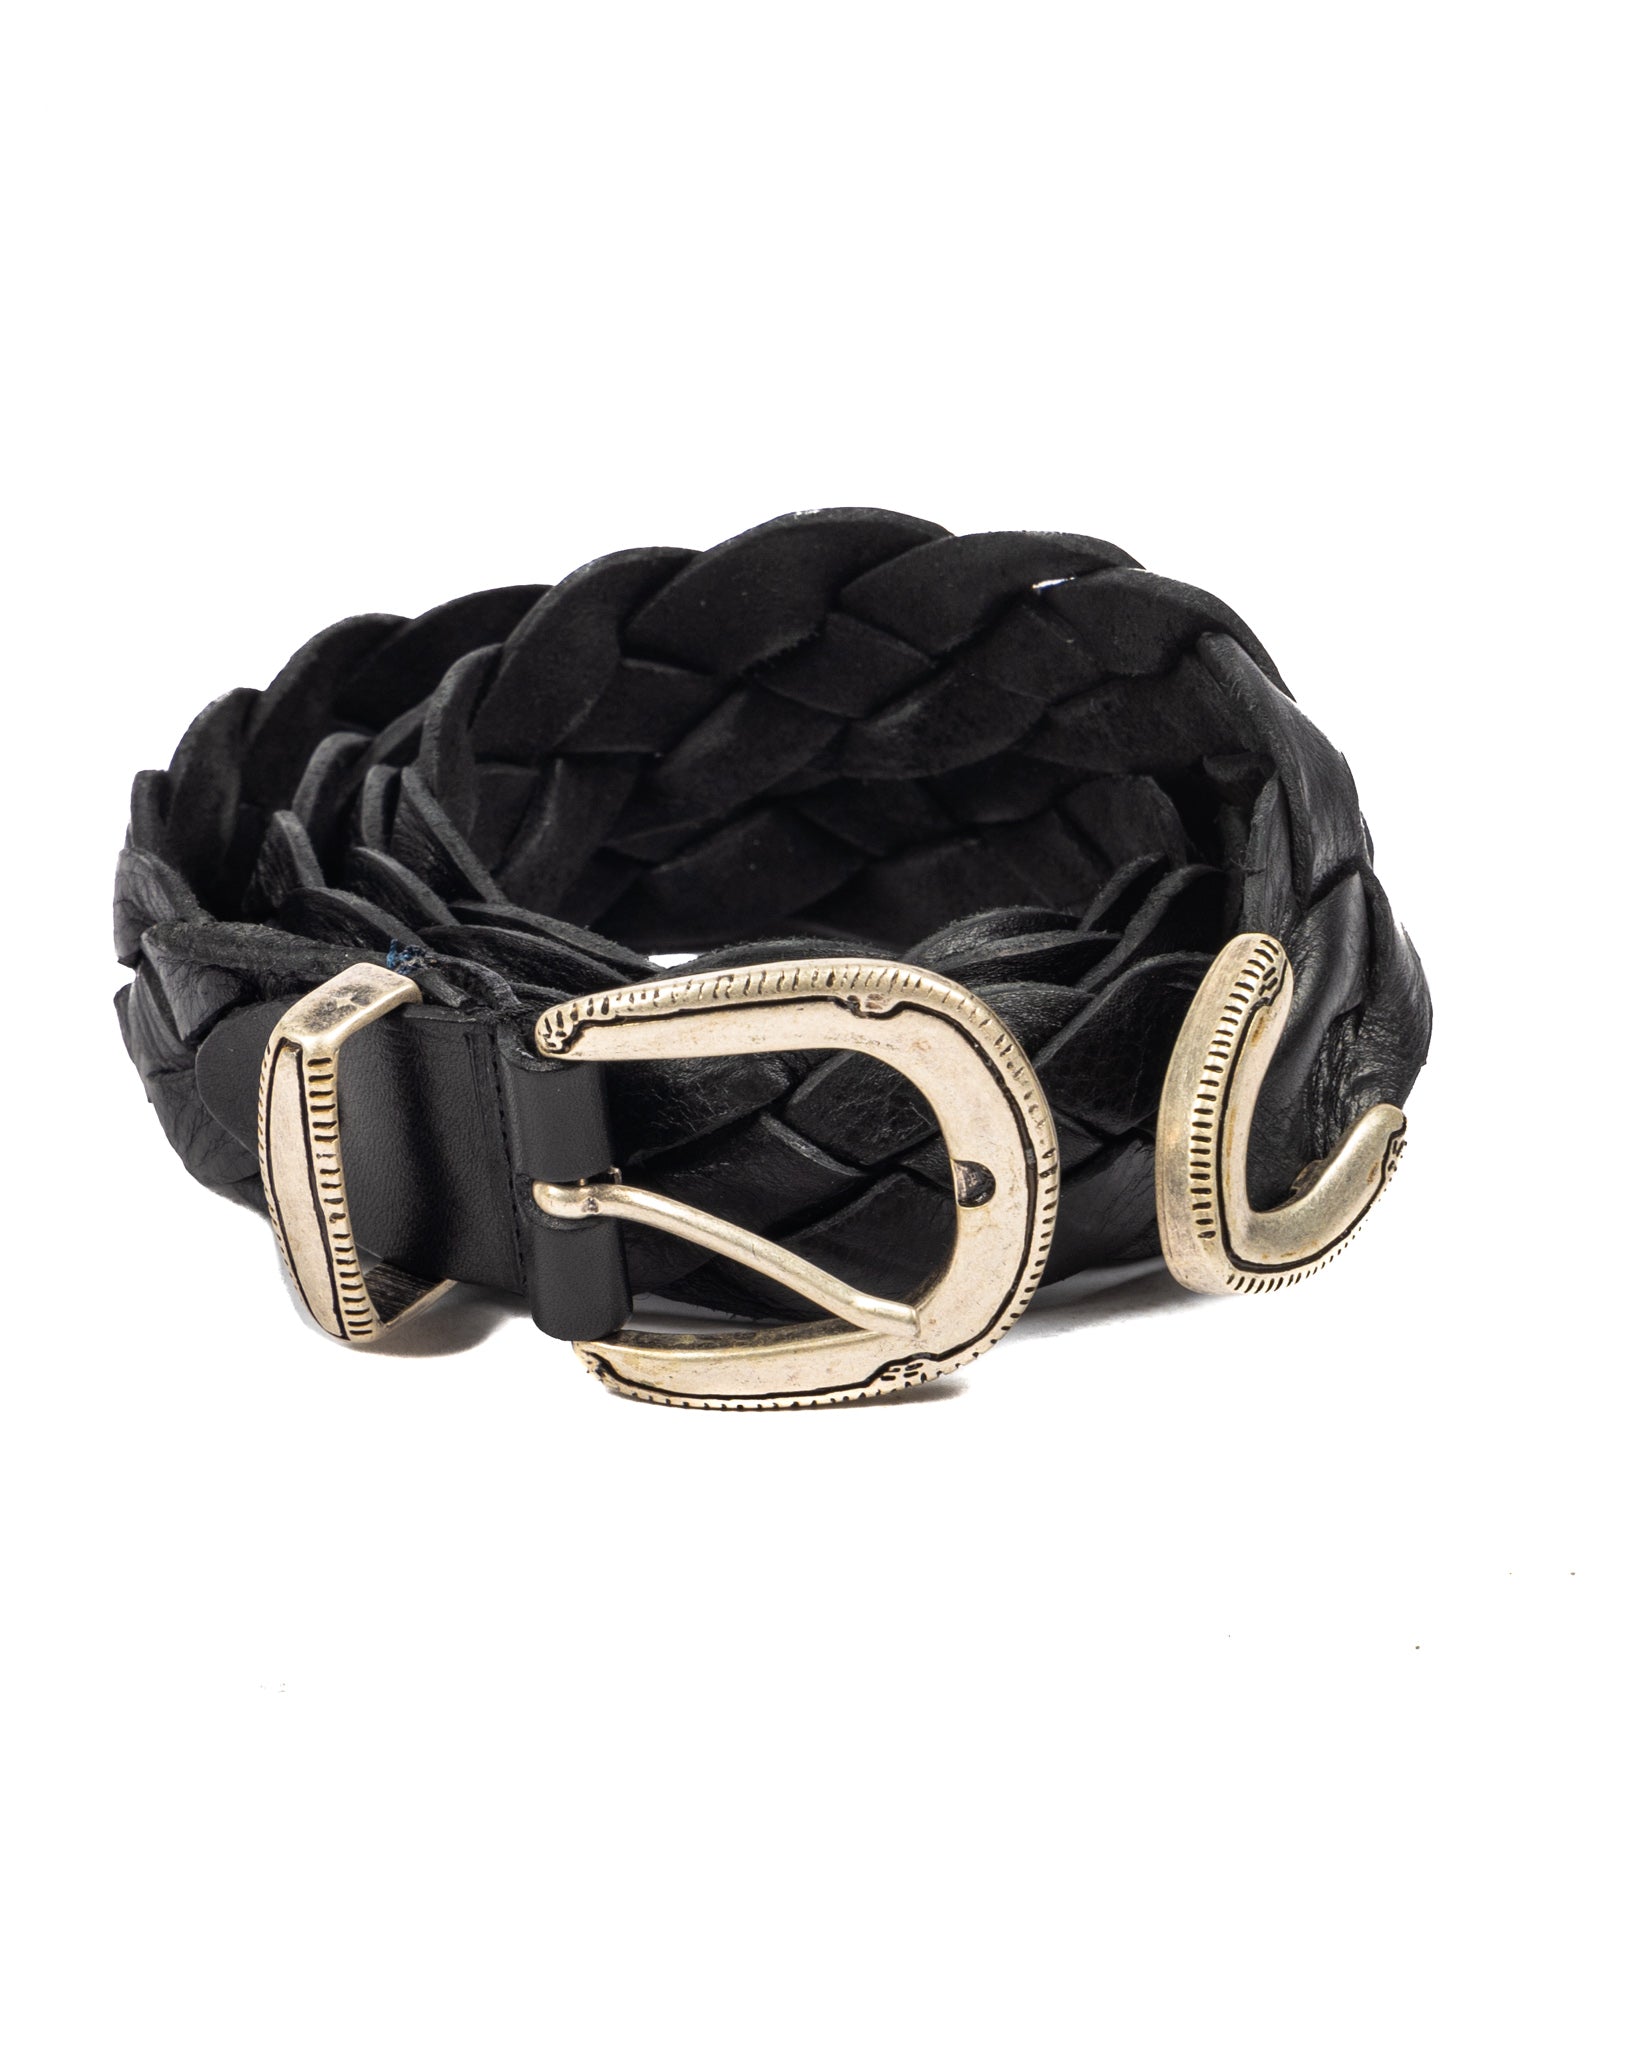 Chianti - black wide woven leather belt